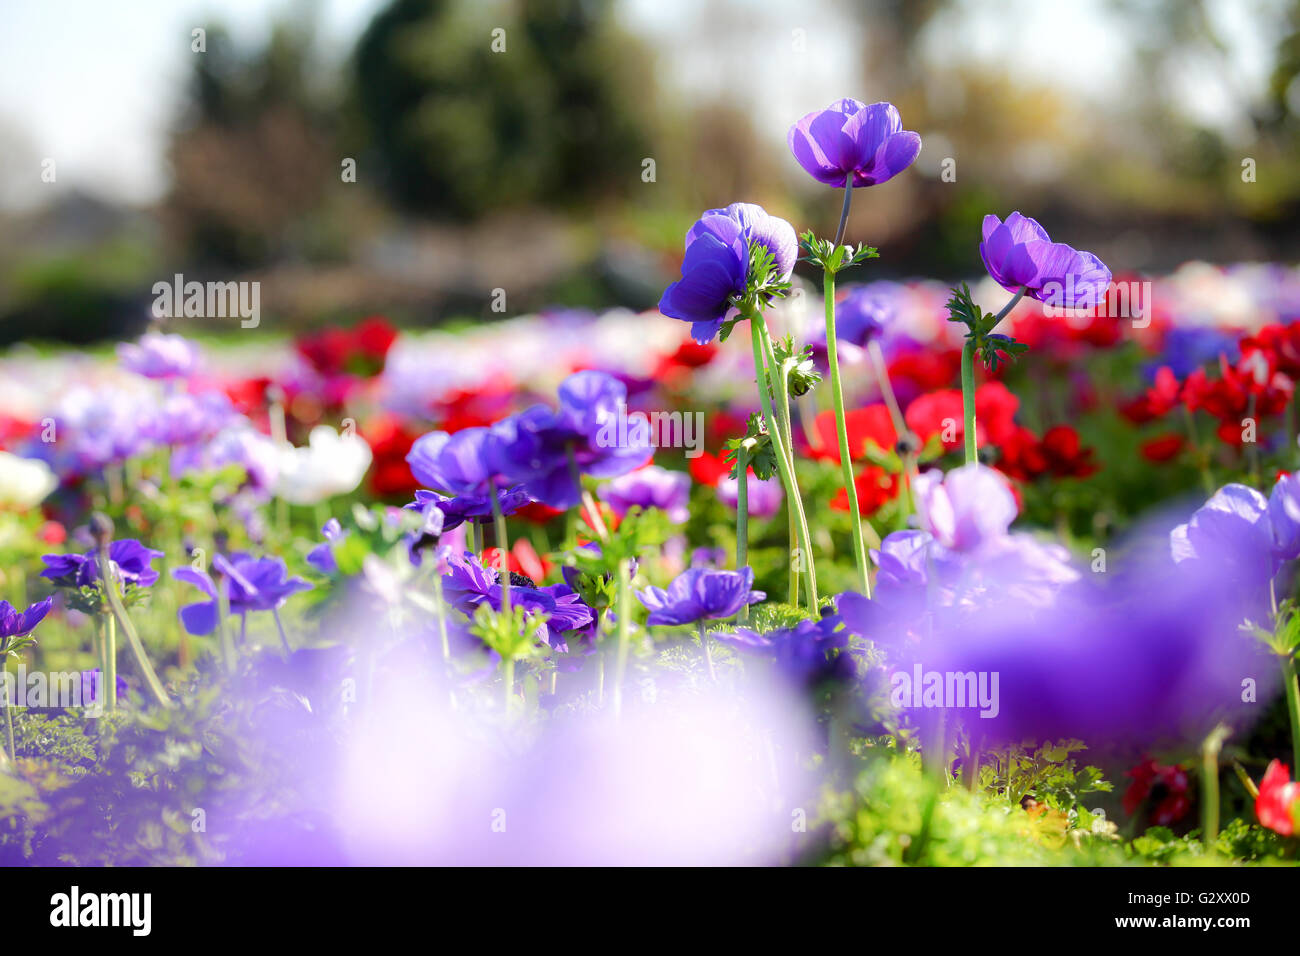 Un champ cultivé et coloré de fleurs Anémone éclatantes. Photographié en Israël Banque D'Images